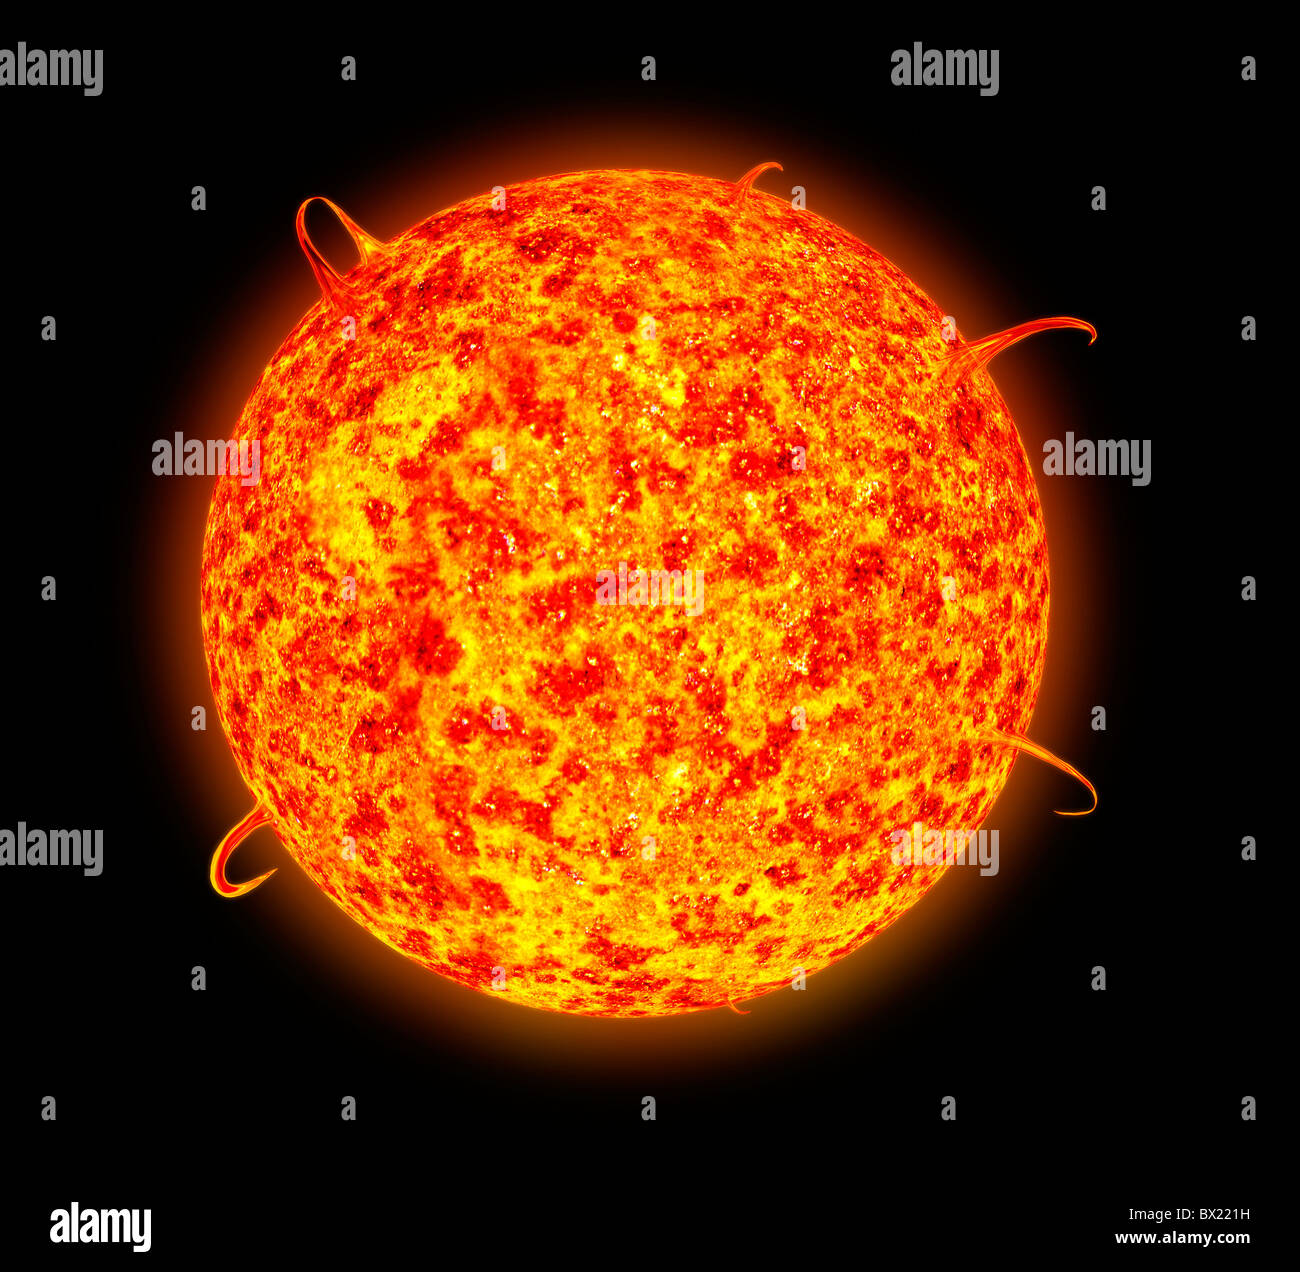 Illustration de l'activité des taches solaires et éruption solaire comme on peut le voir à travers un spectroscope Banque D'Images